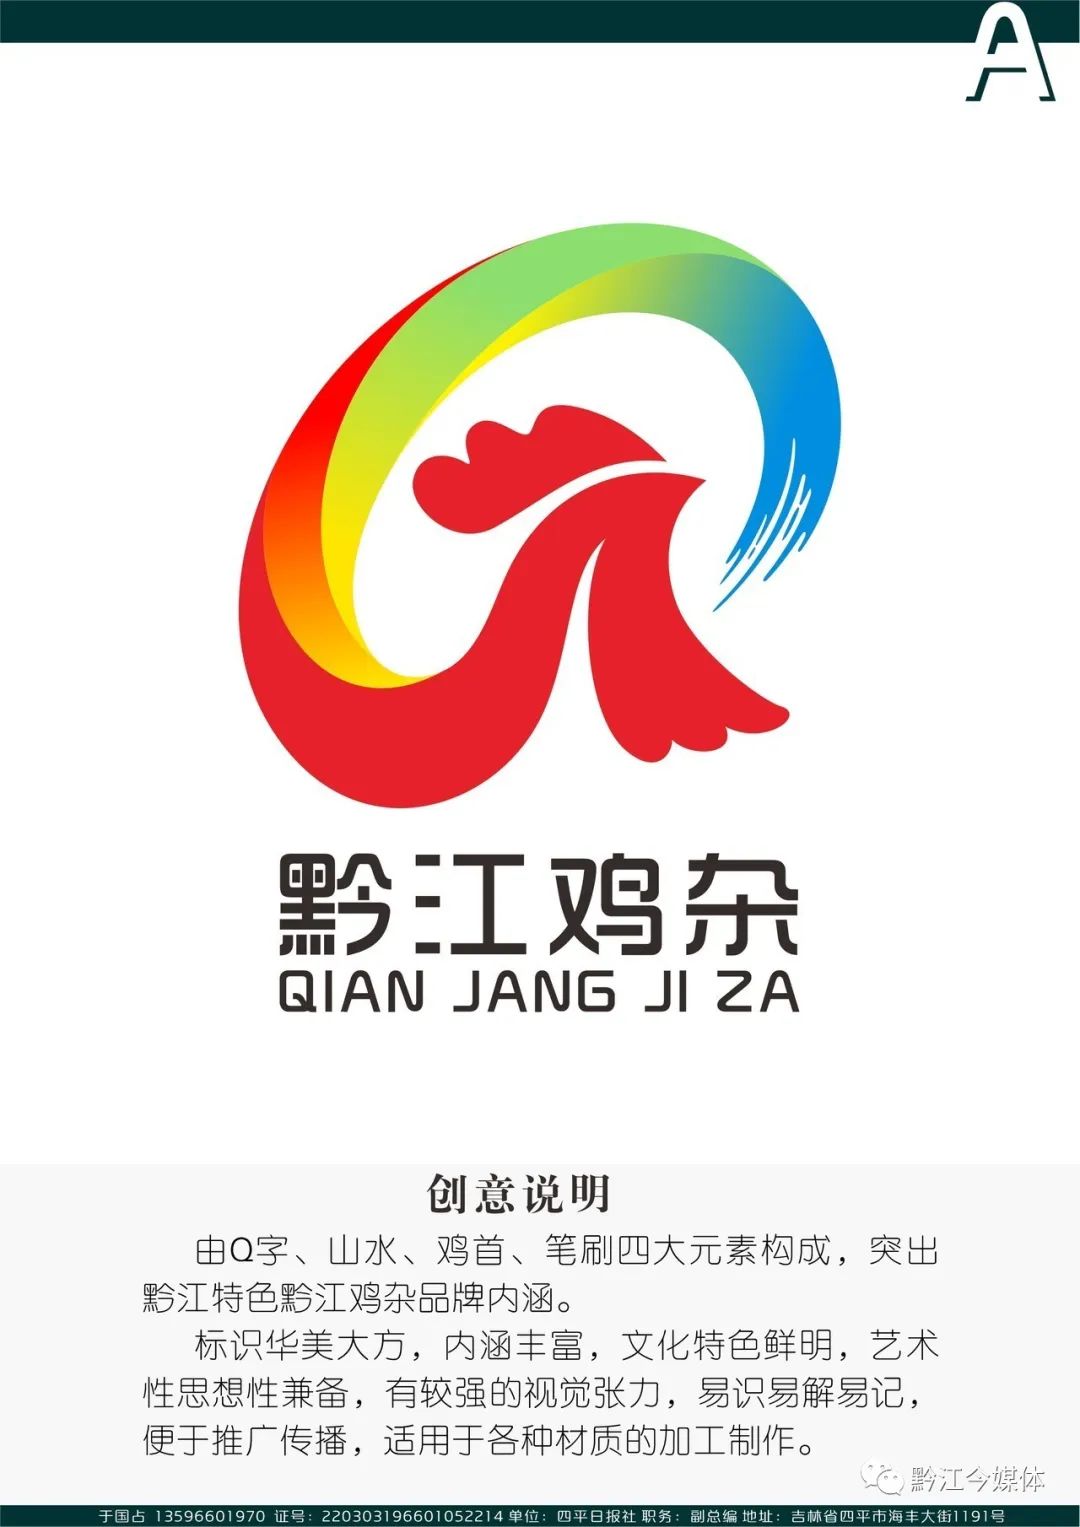 黔江鸡杂logo图片